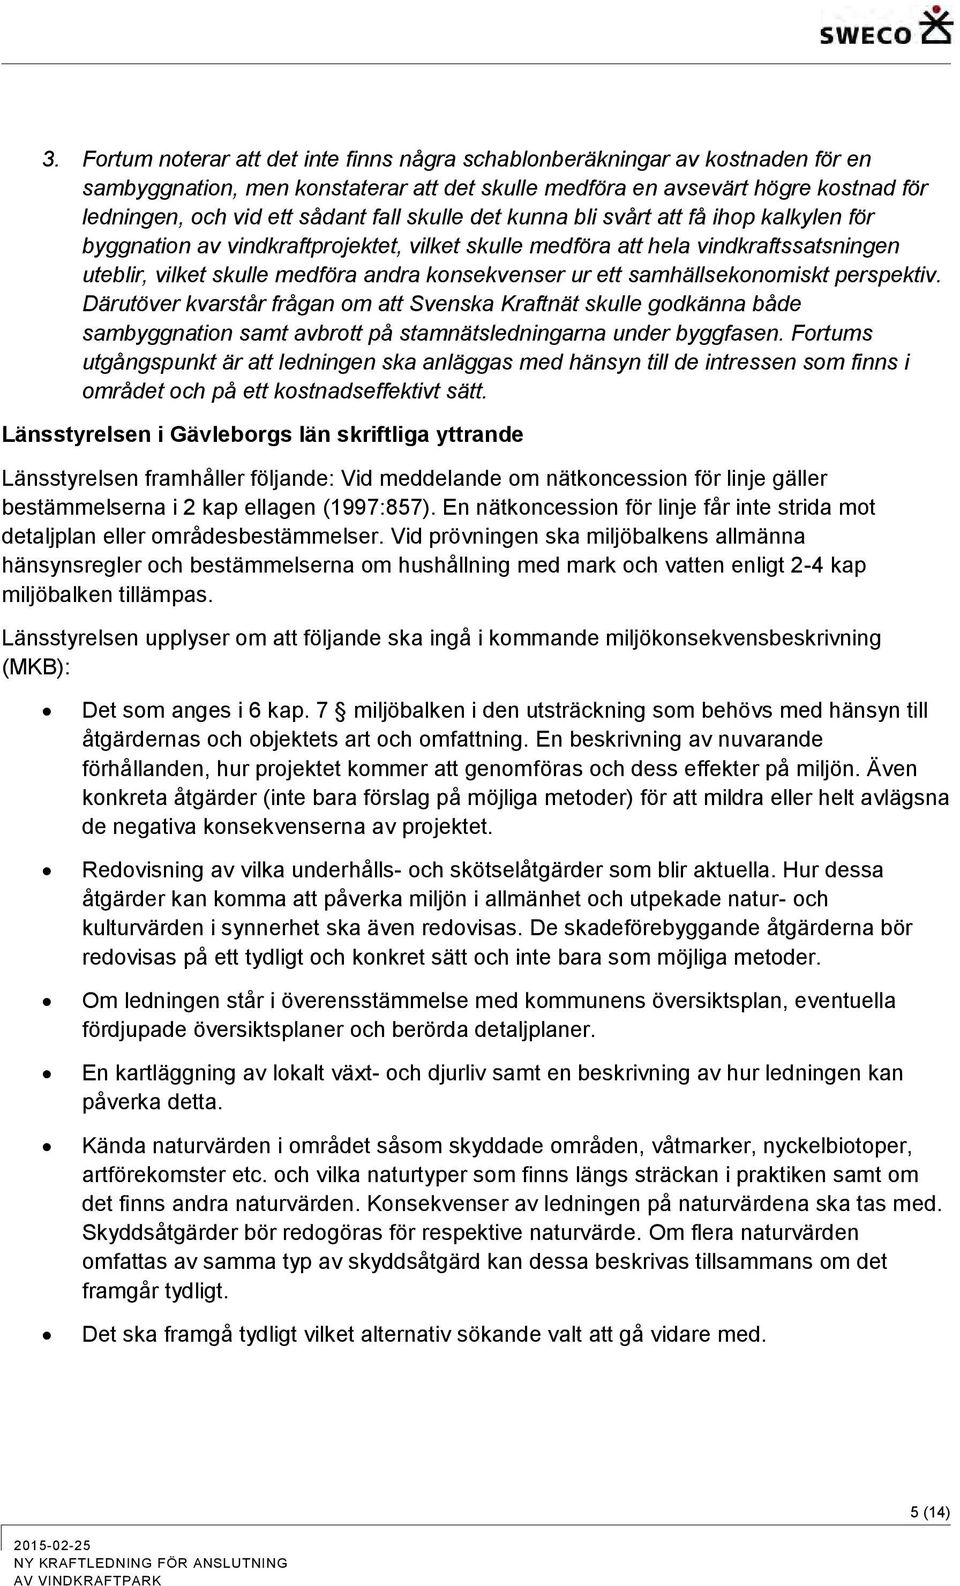 samhällsekonomiskt perspektiv. Därutöver kvarstår frågan om att Svenska Kraftnät skulle godkänna både sambyggnation samt avbrott på stamnätsledningarna under byggfasen.